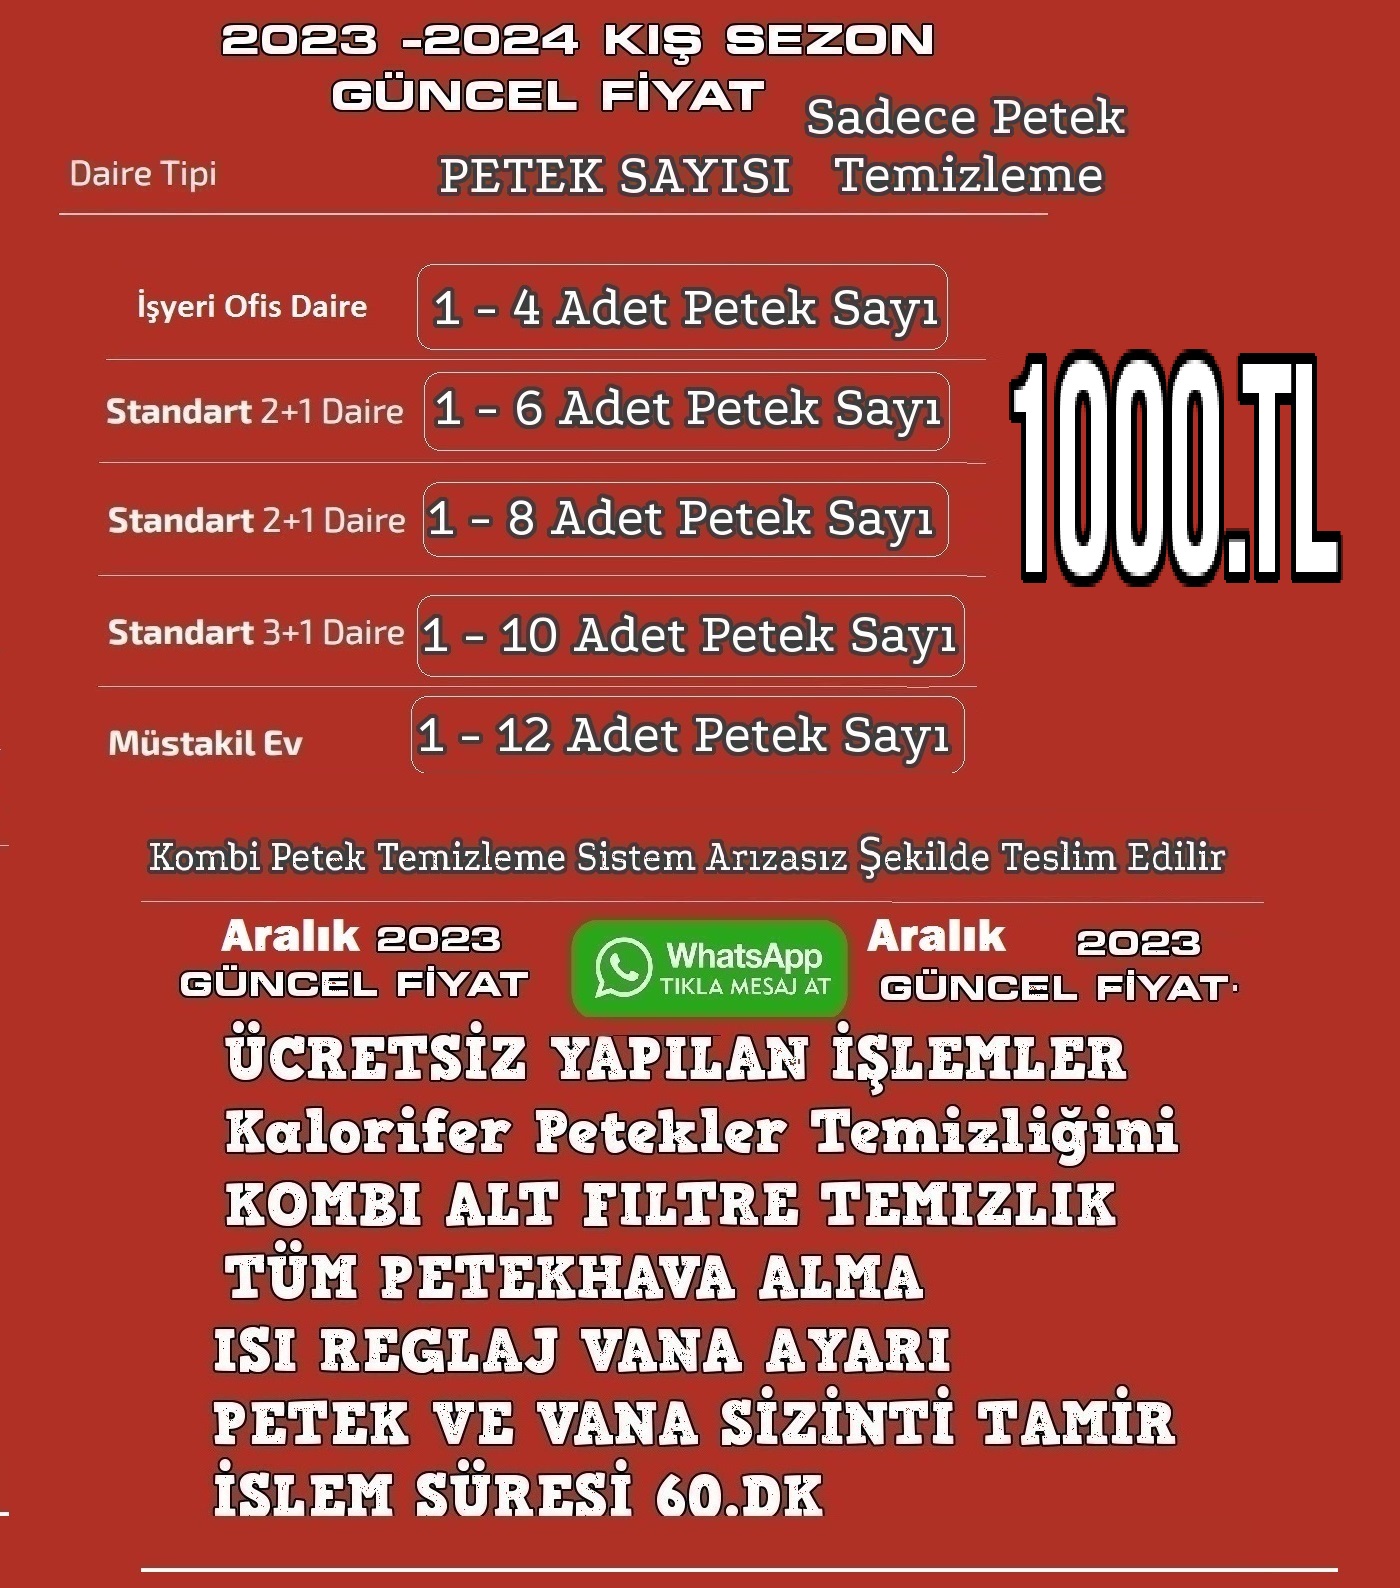 Beşiktaş Petek Temizliği-Beşiktaş Petek Temizleme | Petek Temizliği Beşiktaş